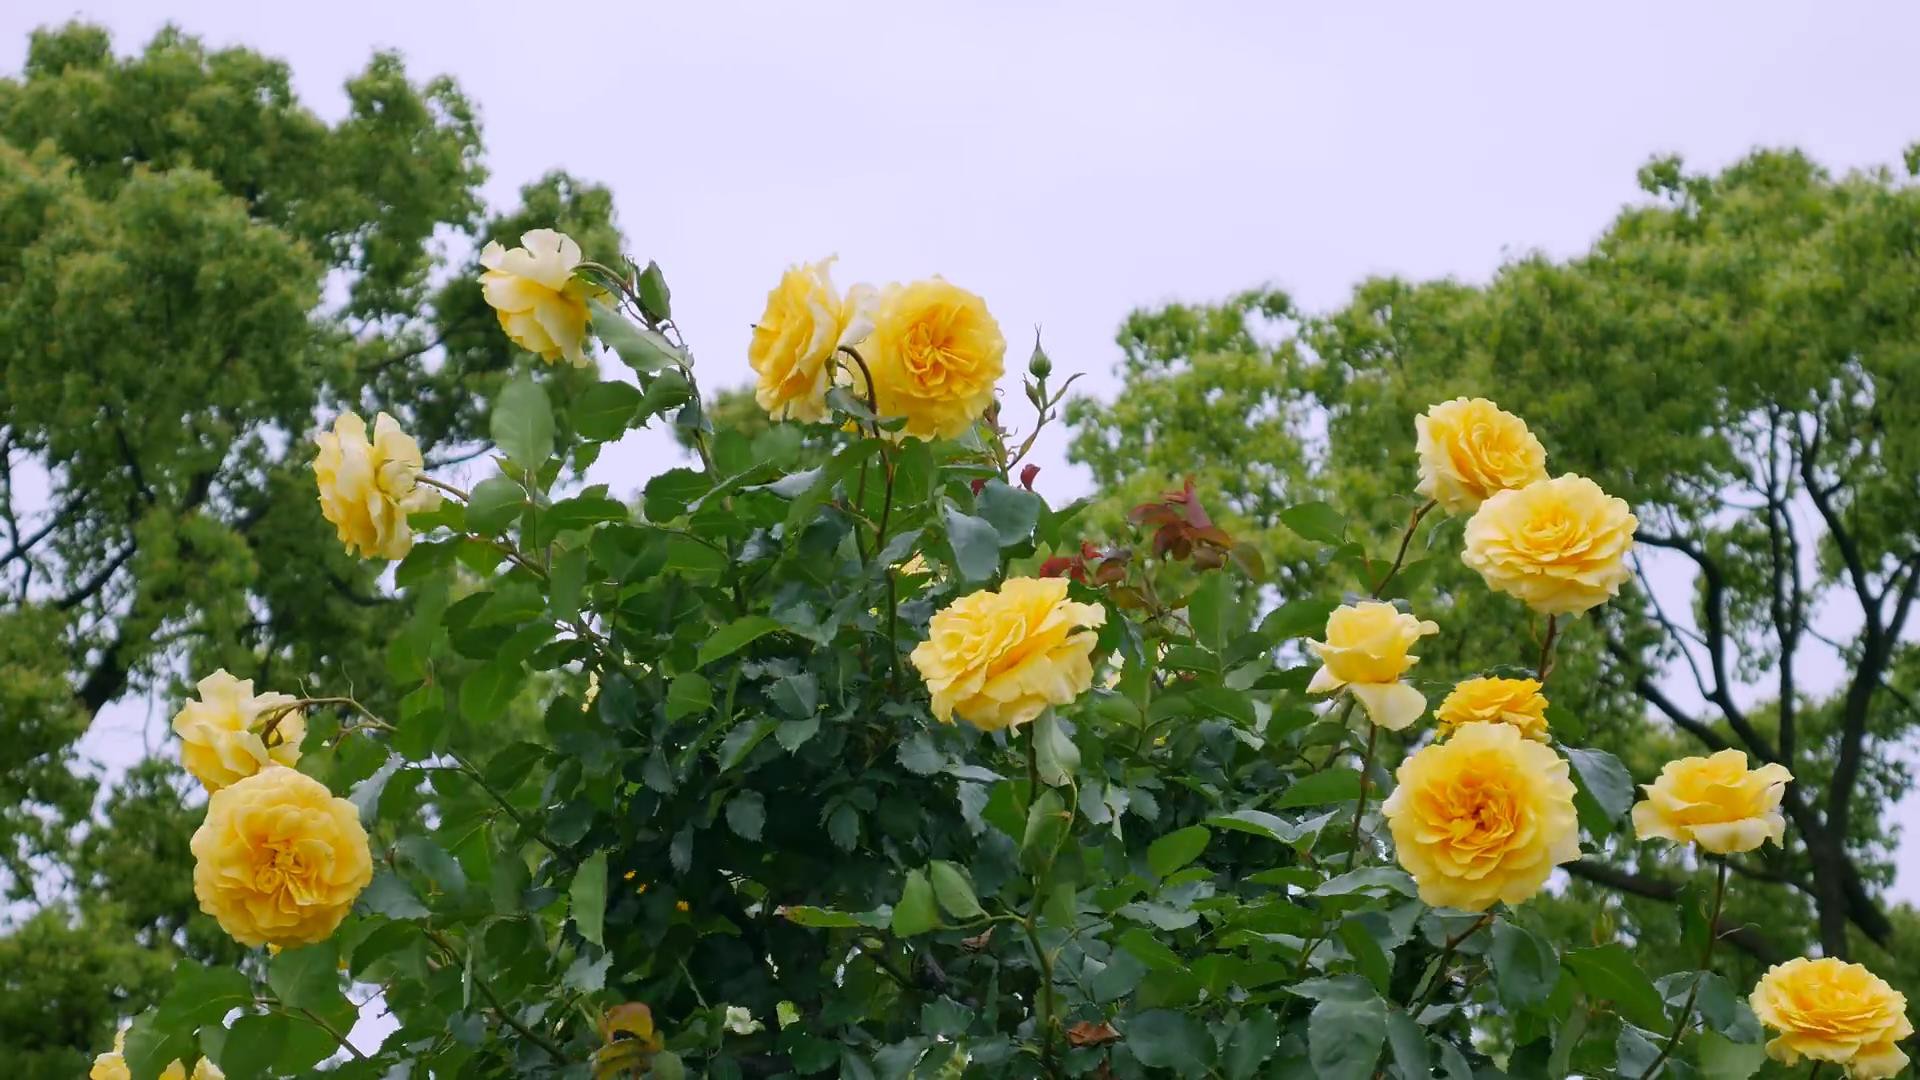 Đến thăm khu vườn trên đảo ở Nhật Bản với 2.600 cây hoa hồng rung rinh trước gió đẹp mê mẩn lòng người - Ảnh 10.